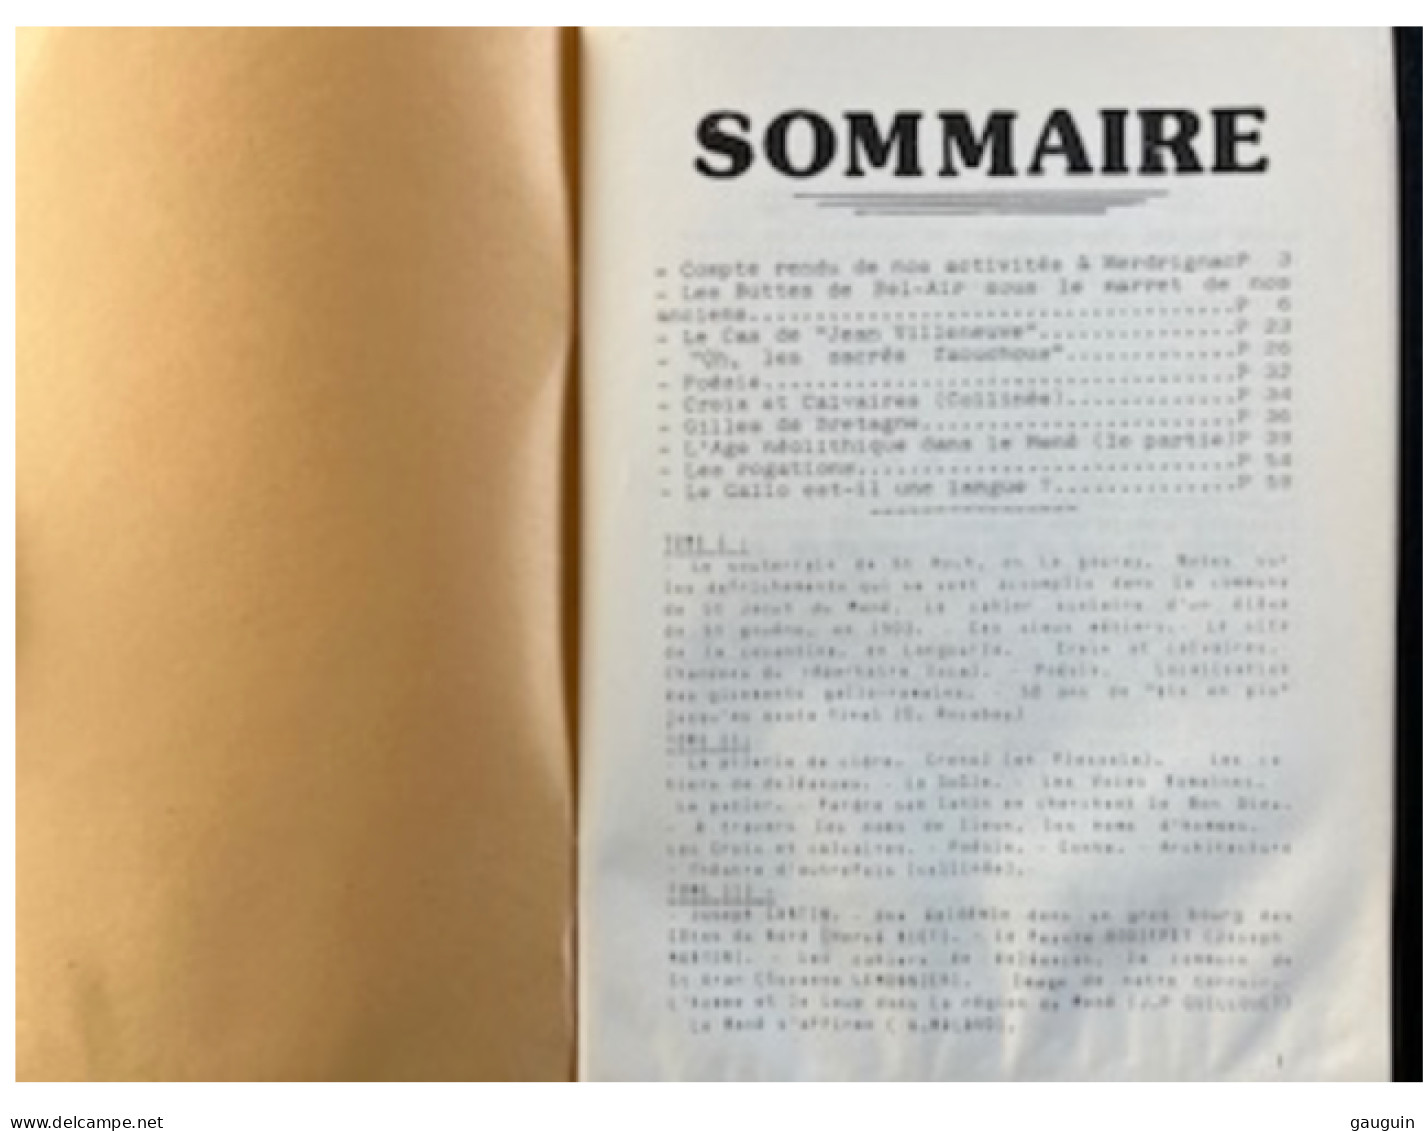 Le MENÉ - ANNALES Association Sauvegarde Du Patrimoine Culturel Du Mené - Tome 4 (1986) - Bretagne